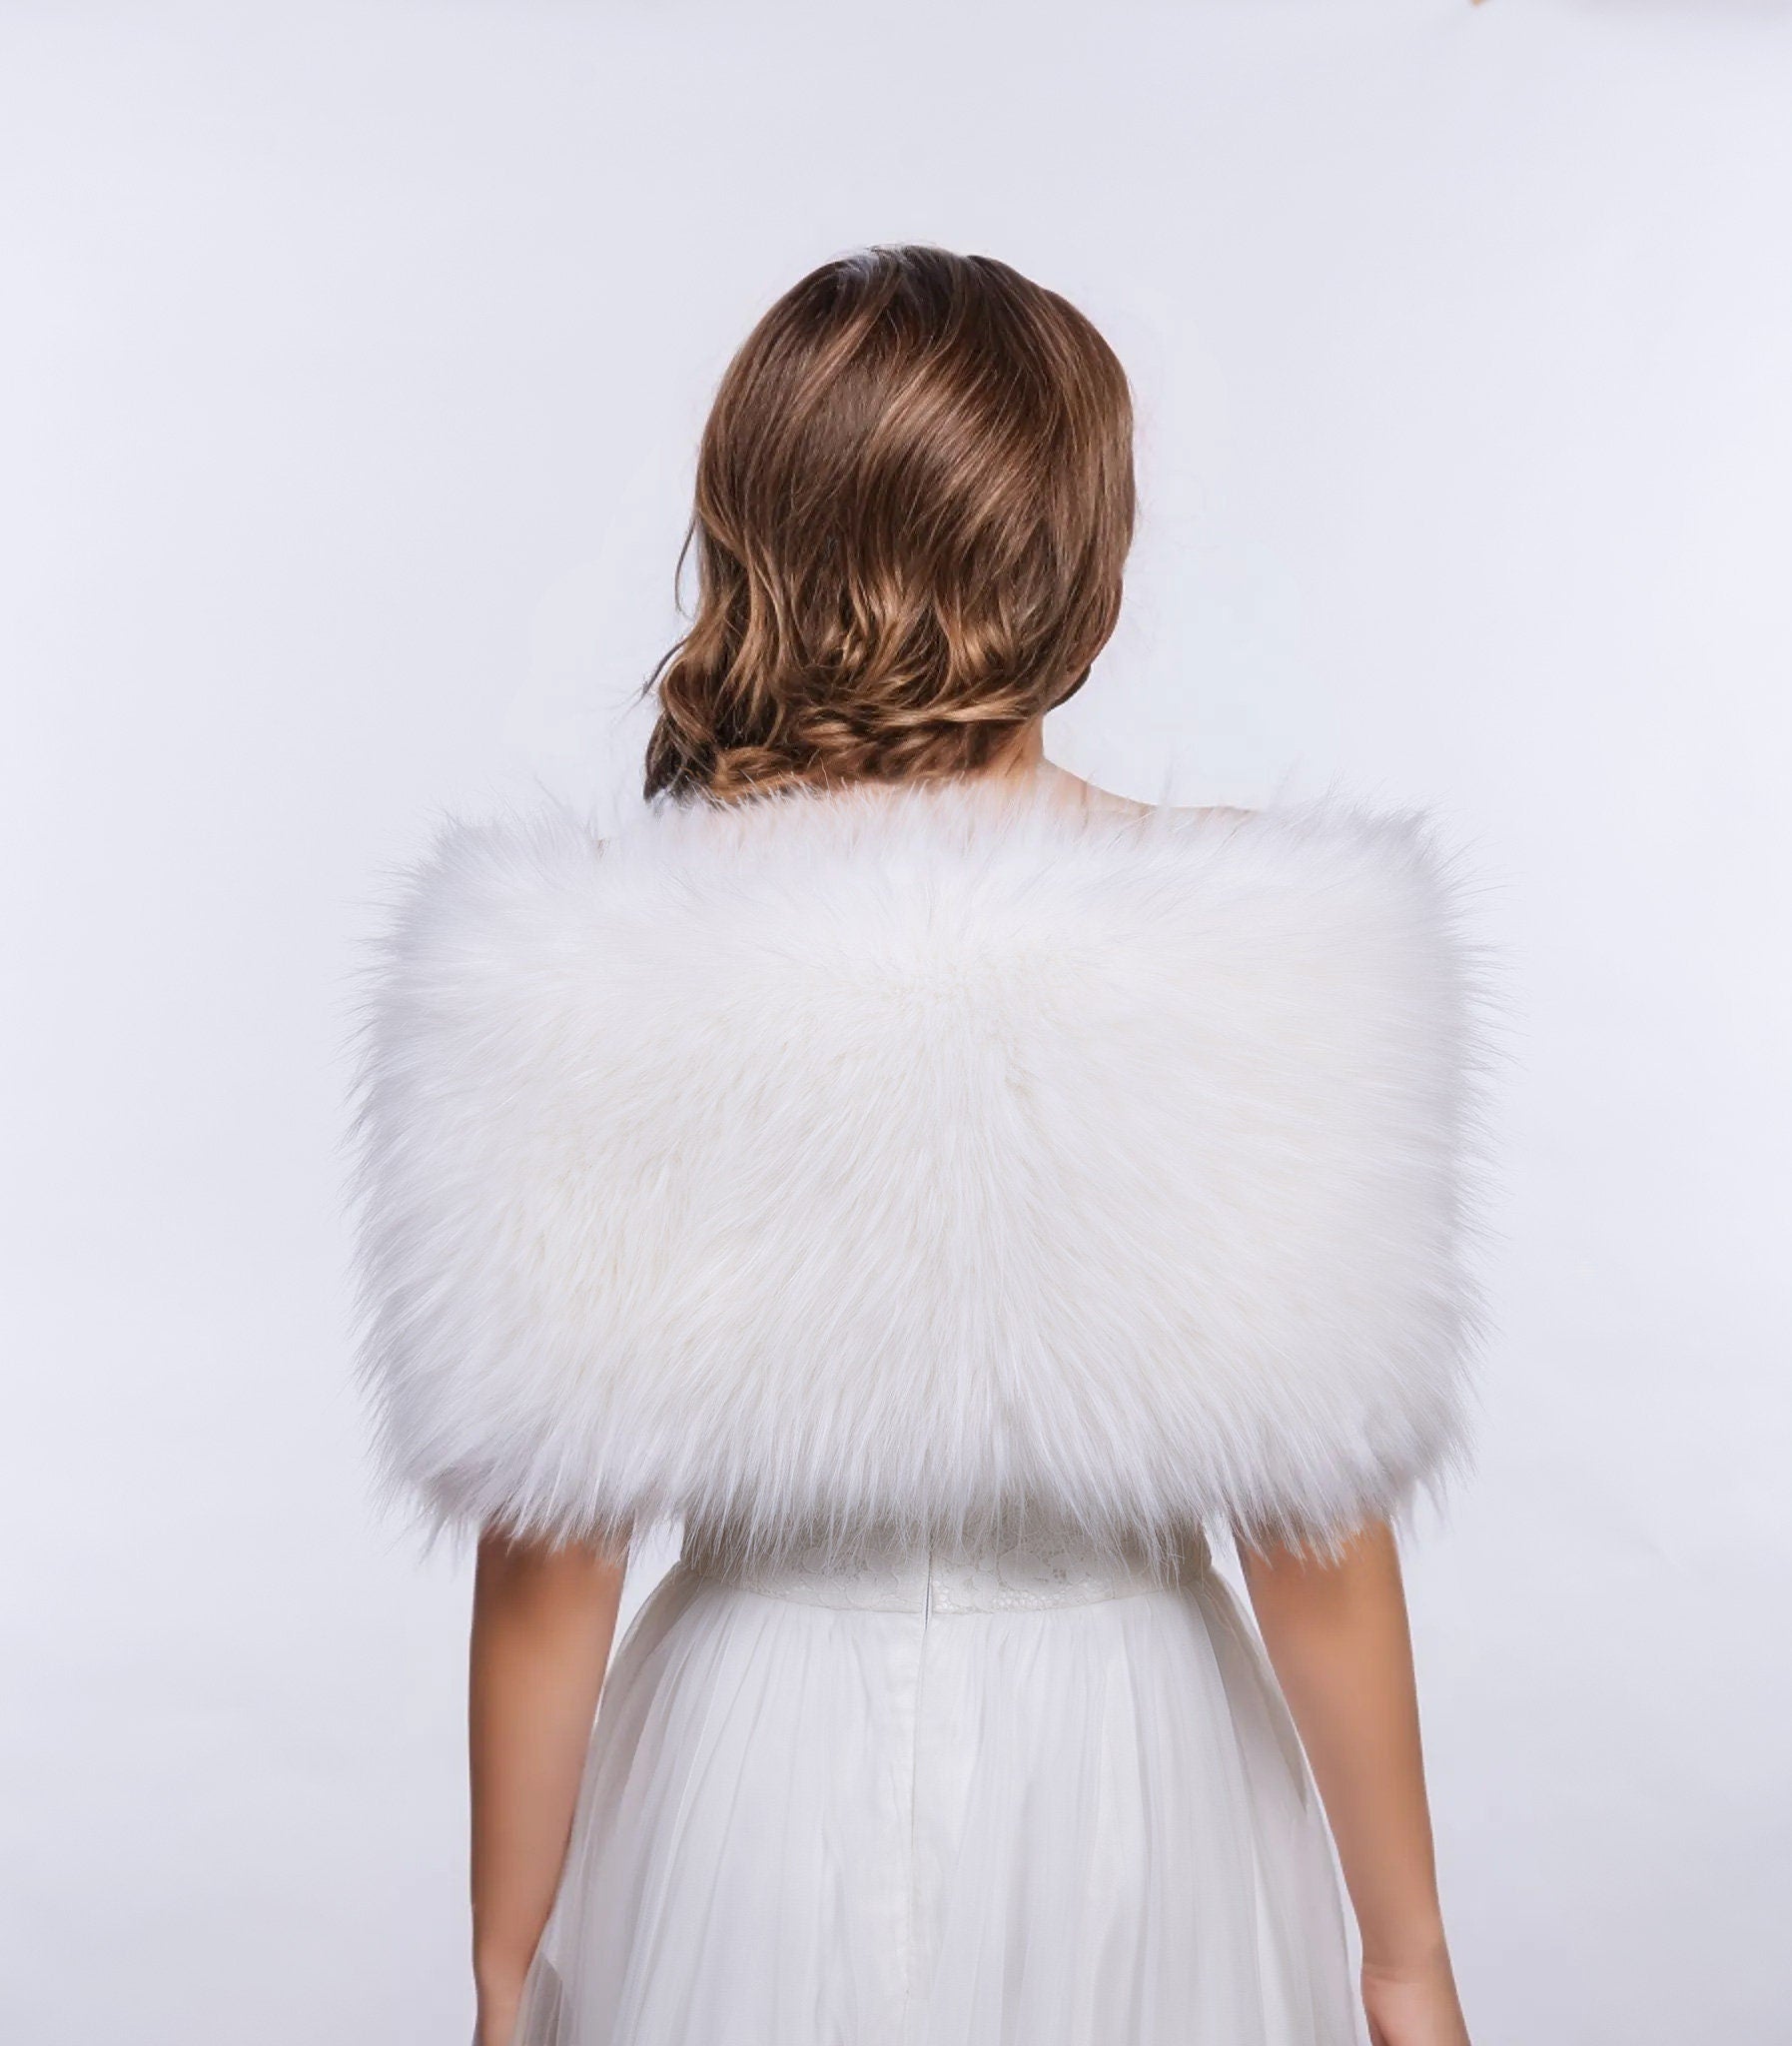 White faux fur bridal wrap, wedding faux fur shawl, faux fur bridal stole, faux fur cape B012-white